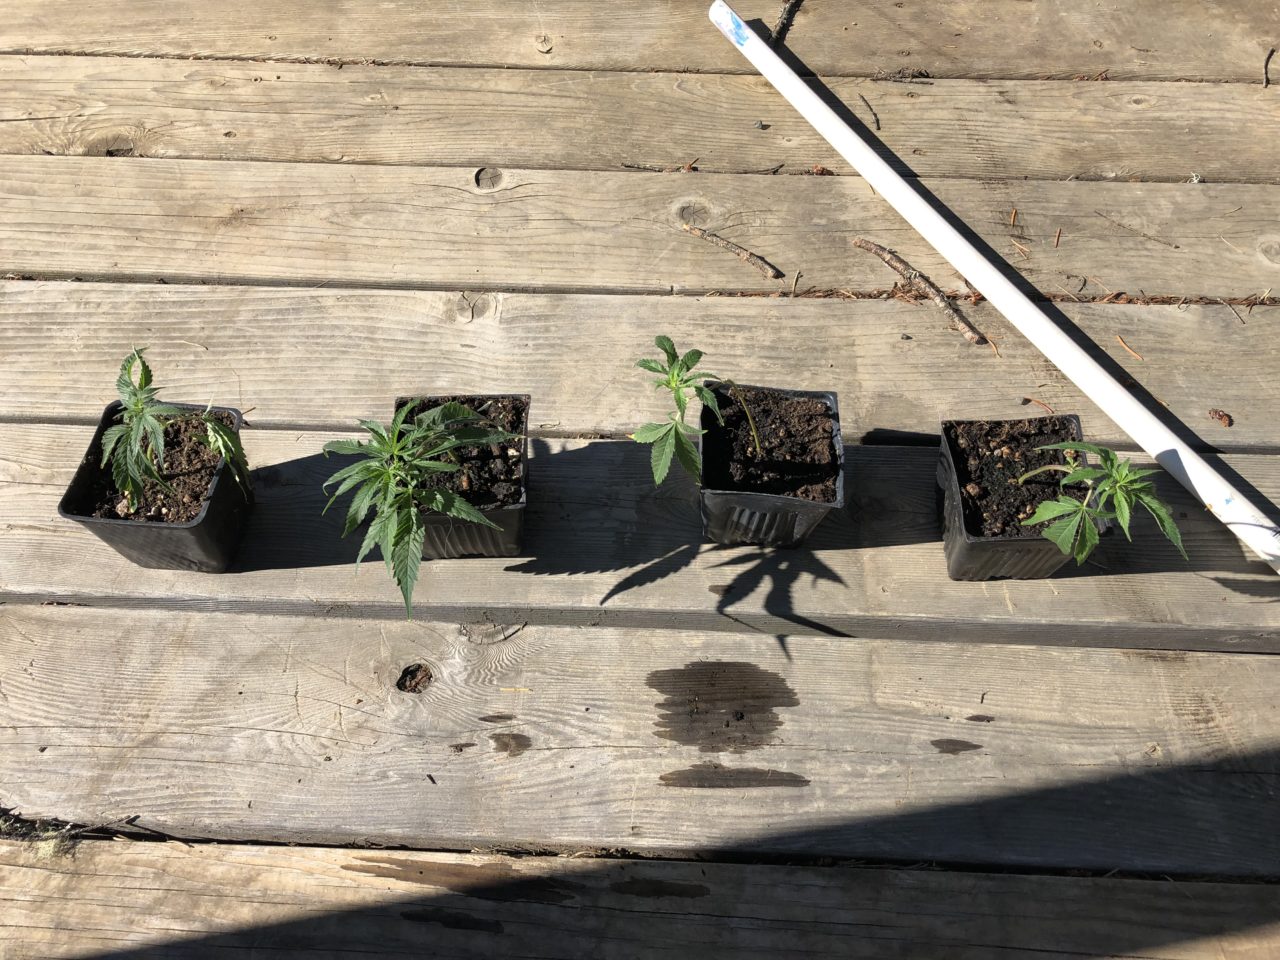 Oregon Law Enforcement Seizes Illegal Cannabis Plants, Leaves Four Plants Behind